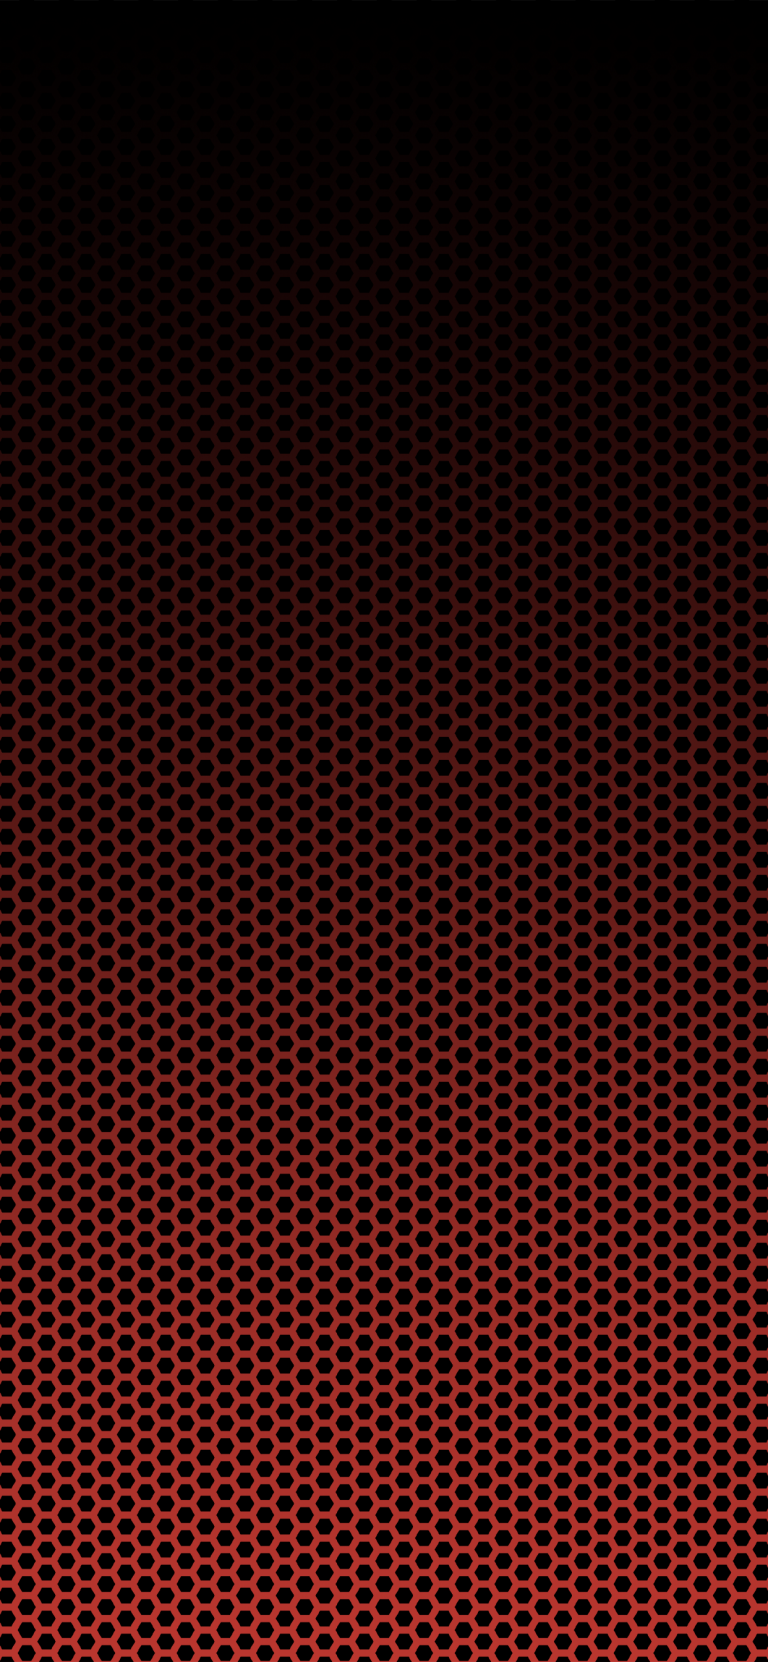 MatrixRed-dark-pattern-iphone-wallpaper-arthur-schrinemacher-768×1662